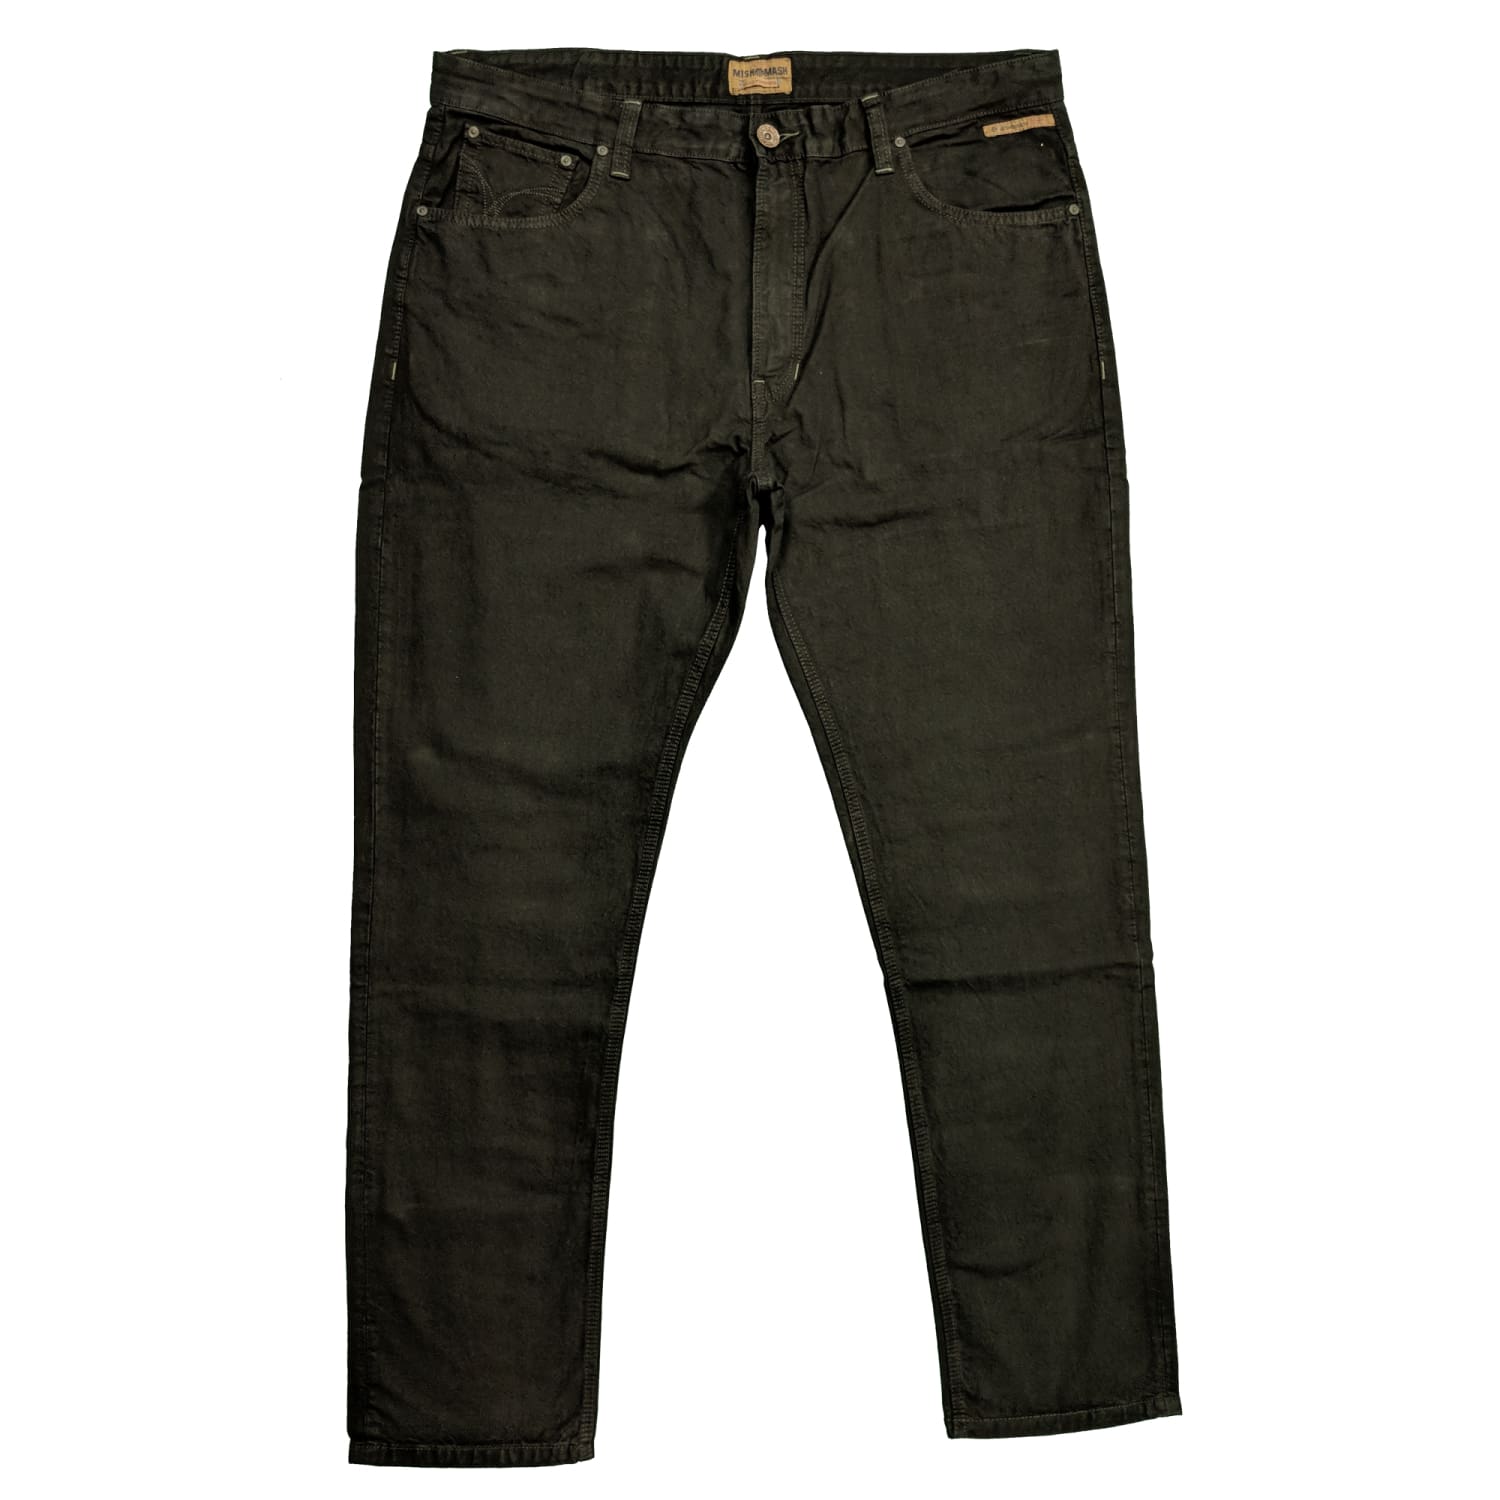 Mish Mash Jeans - 11267 - 1988 Vintage Black 1